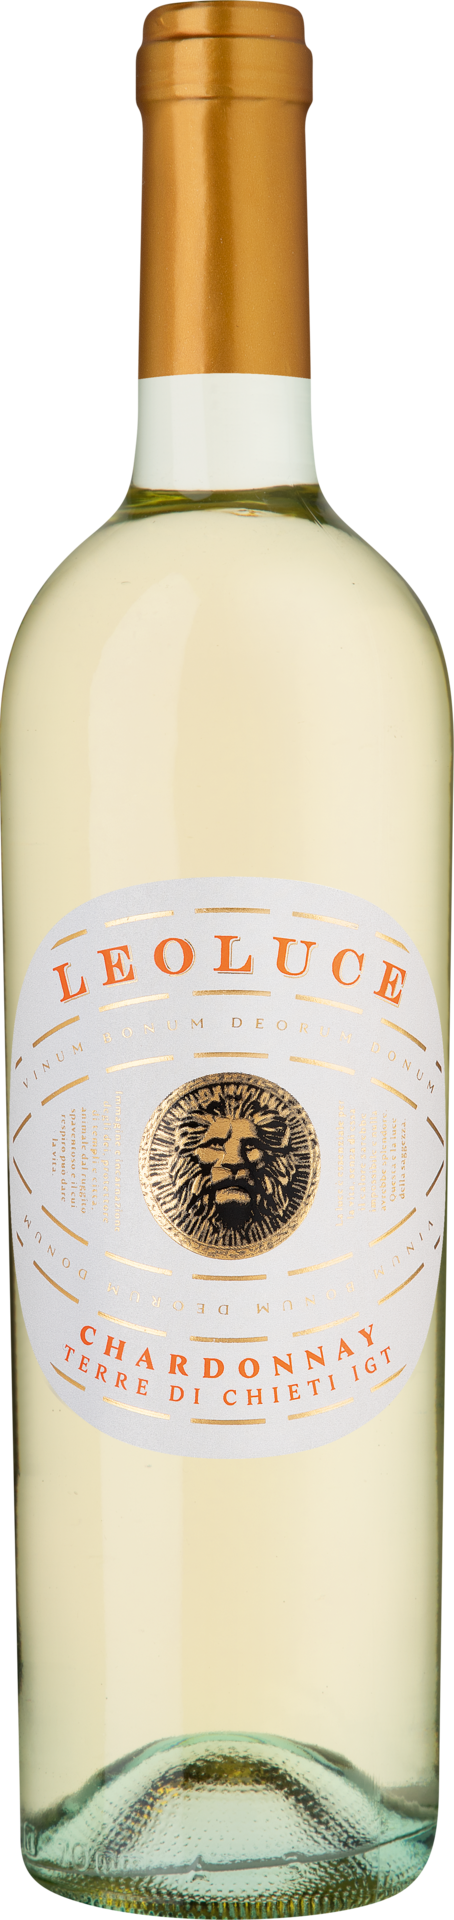 Leoluce Chardonnay Terre di Chieti IGT